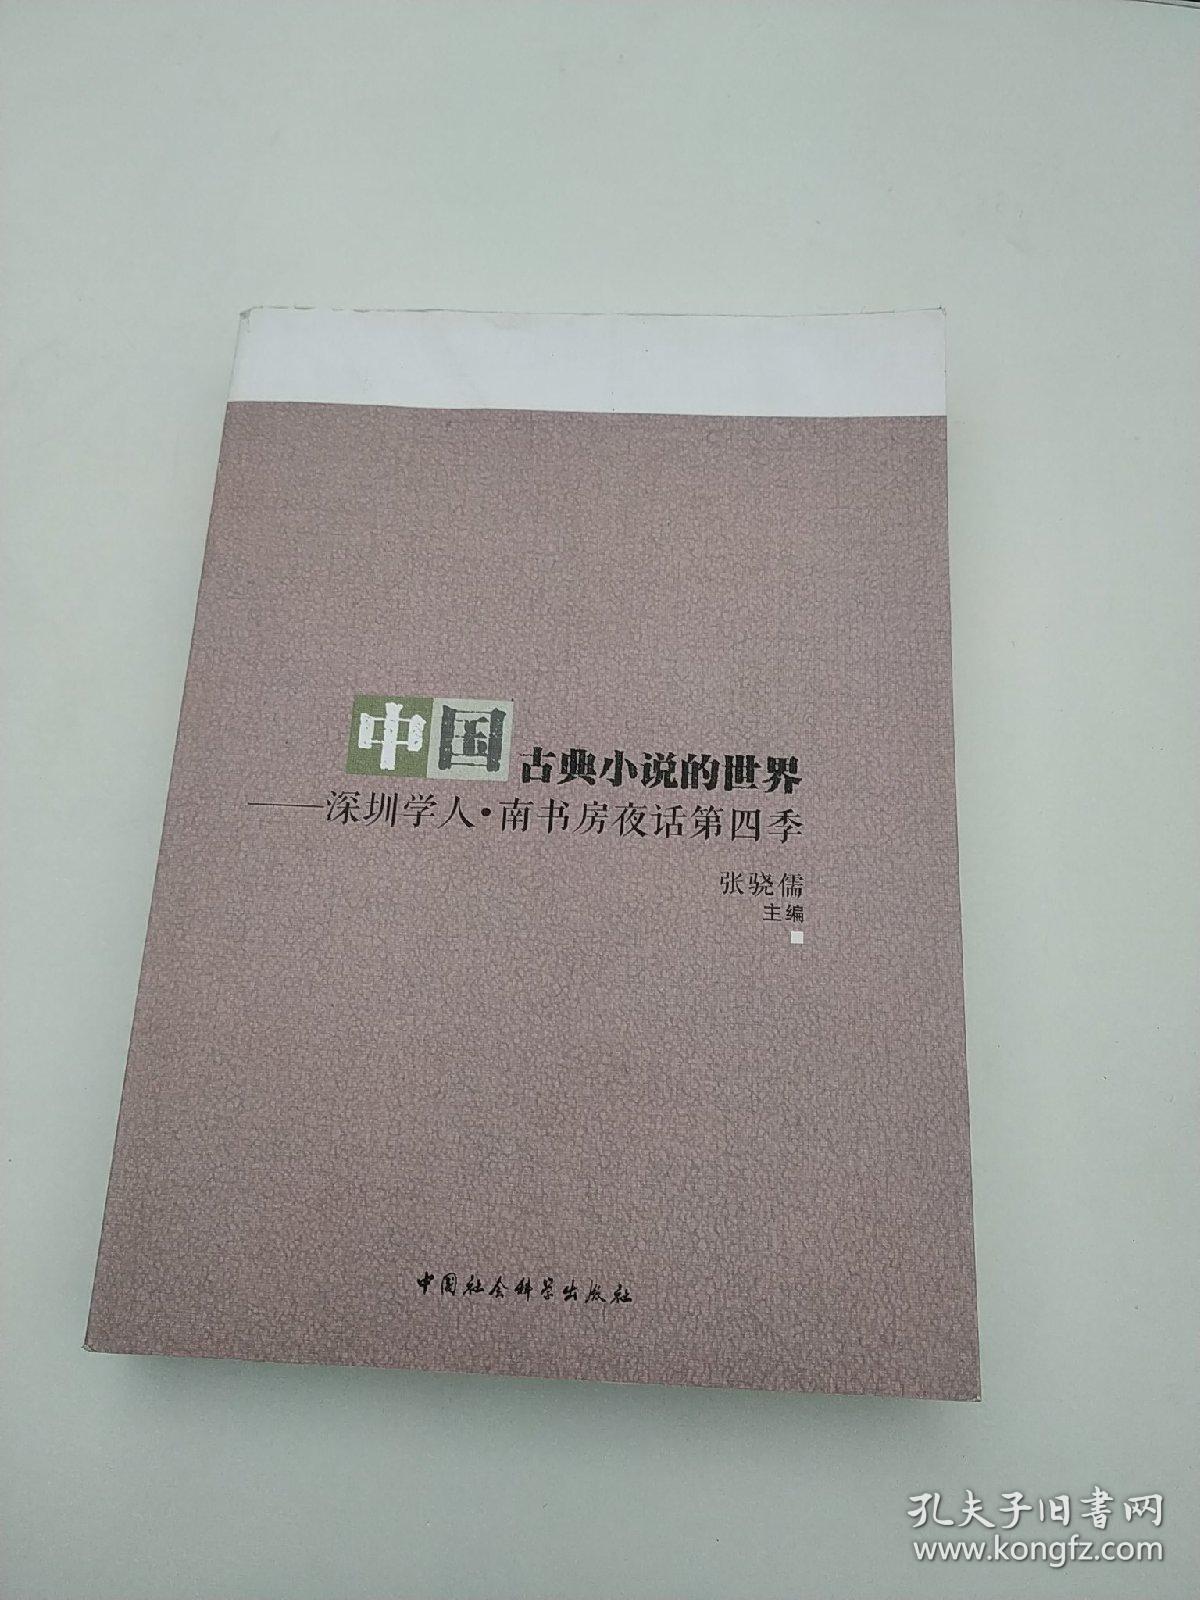 中国古典小说的世界：深圳学人·南书房夜话第四季